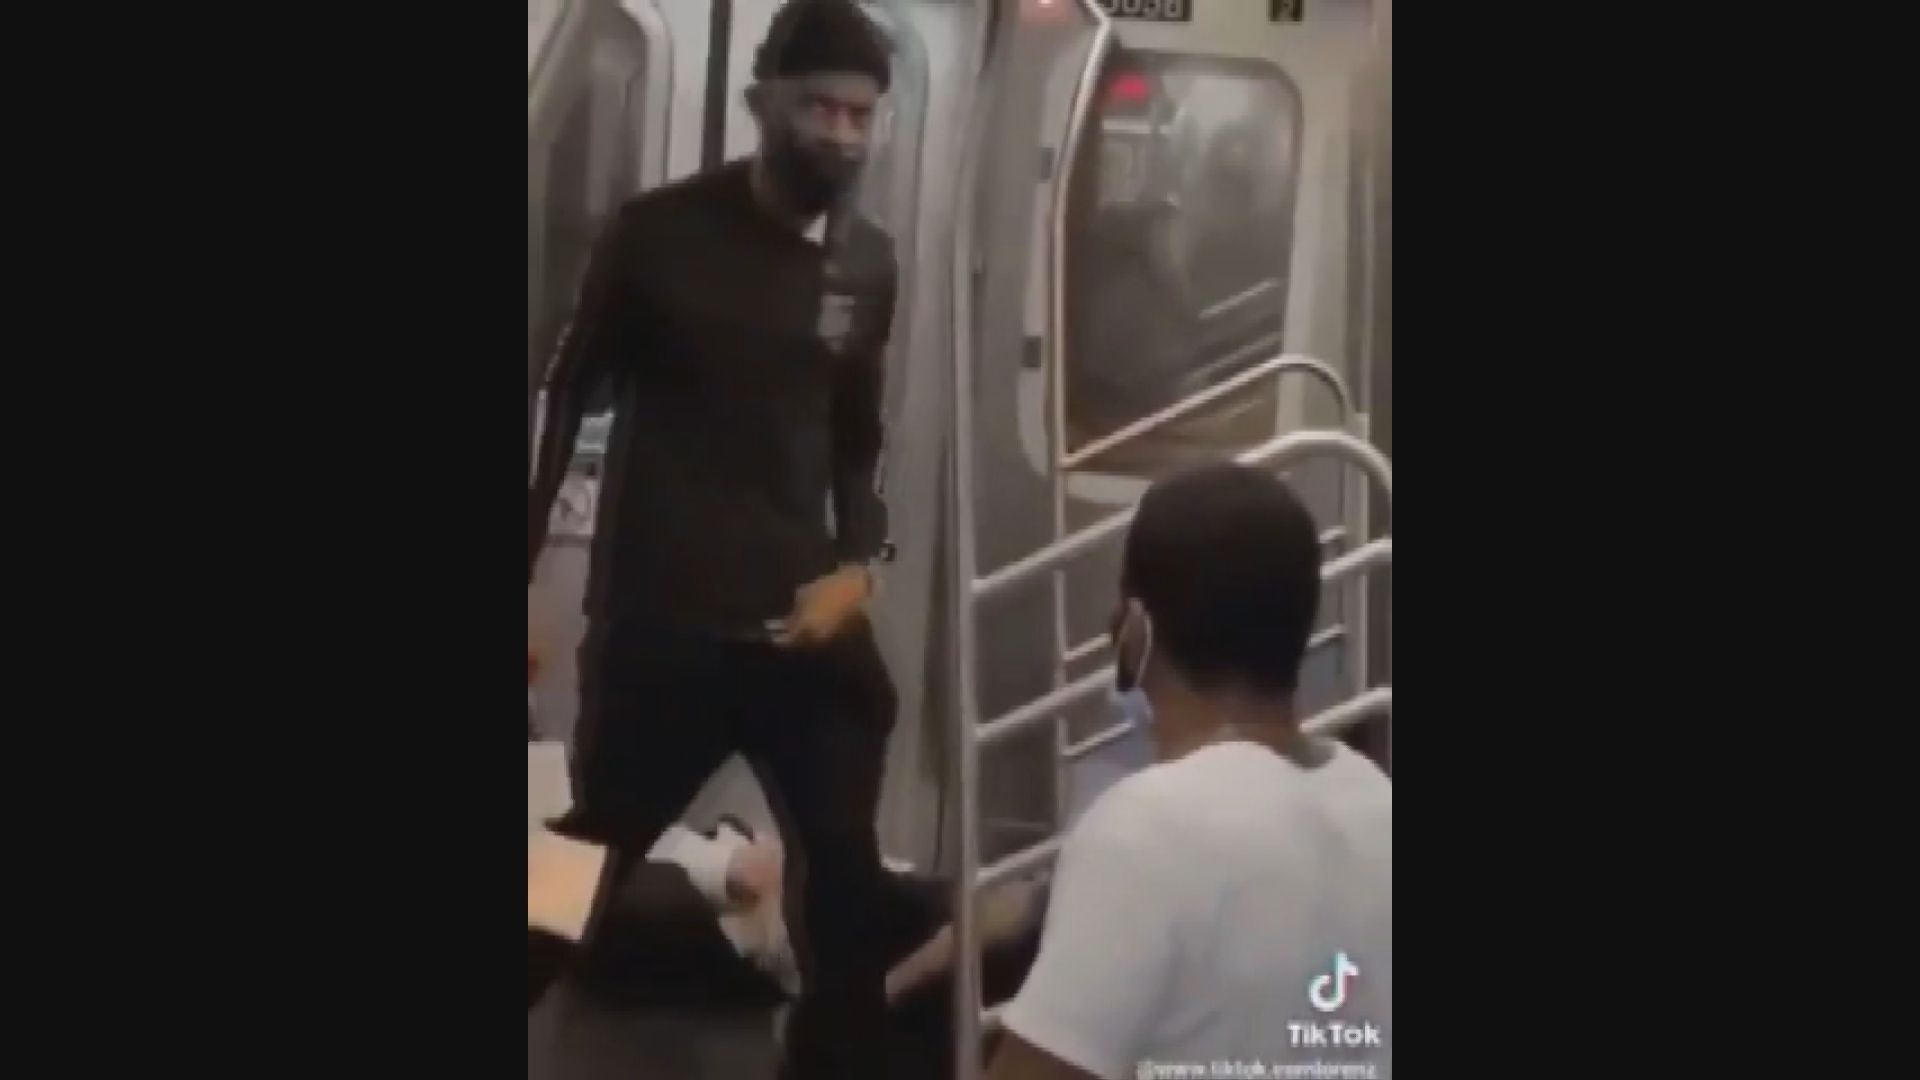  흑인 남성이 1분 가까이 폭행을 휘두른 뒤 지하철에서 내리는 모습 . 뉴욕 경찰은 조사를 위해 해당 영상과 사진 등을 SNS를 통해 공개했다. /출처=Asian Dawn 트위터